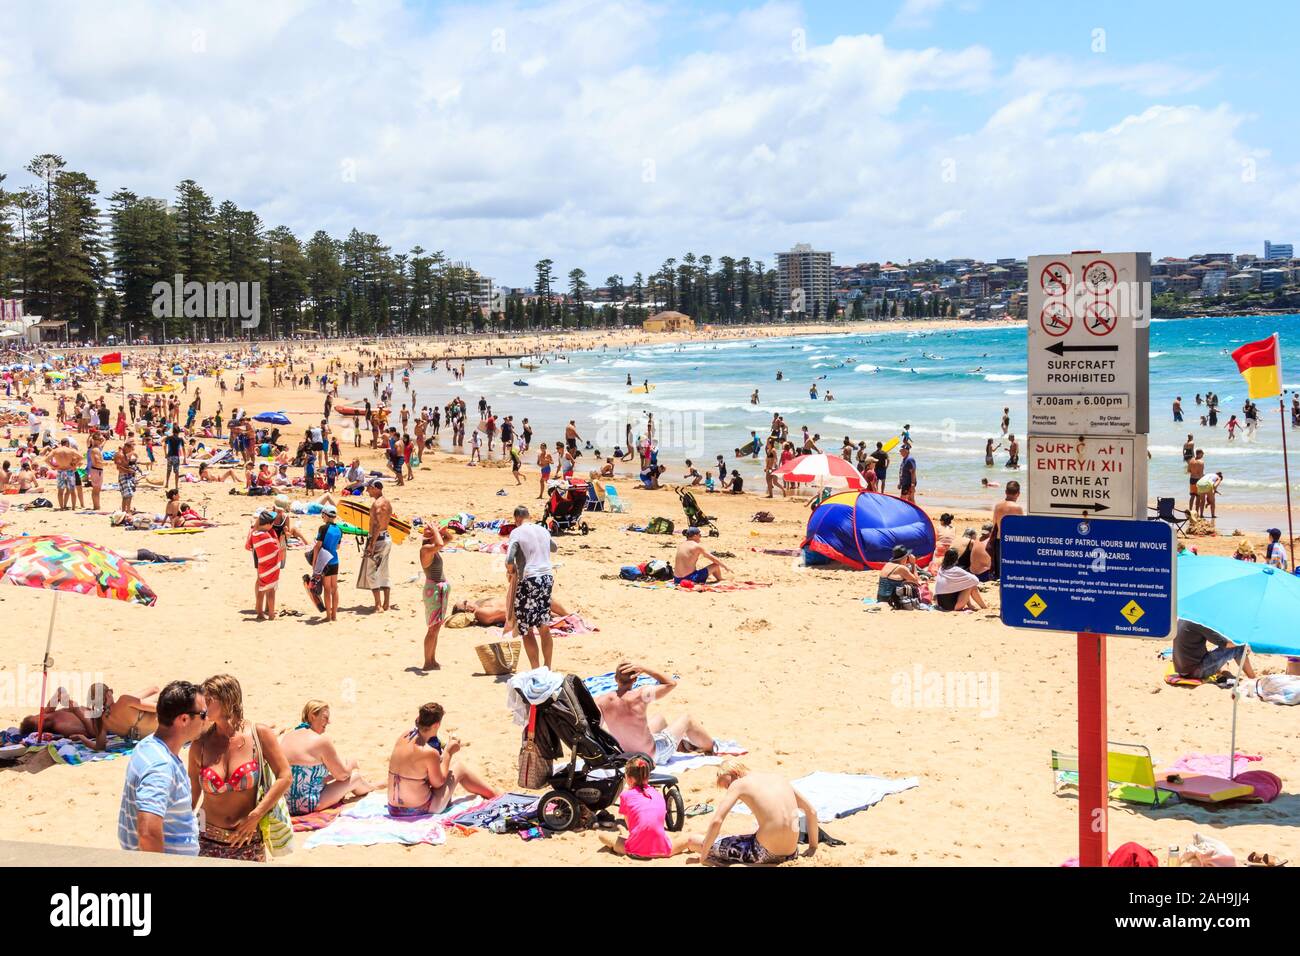 Sydney, Australie - 28 décembre 2013 : Les gens de soleil et profiter de Manly Beach. C'est l'une des plages du nord de la ville. Banque D'Images